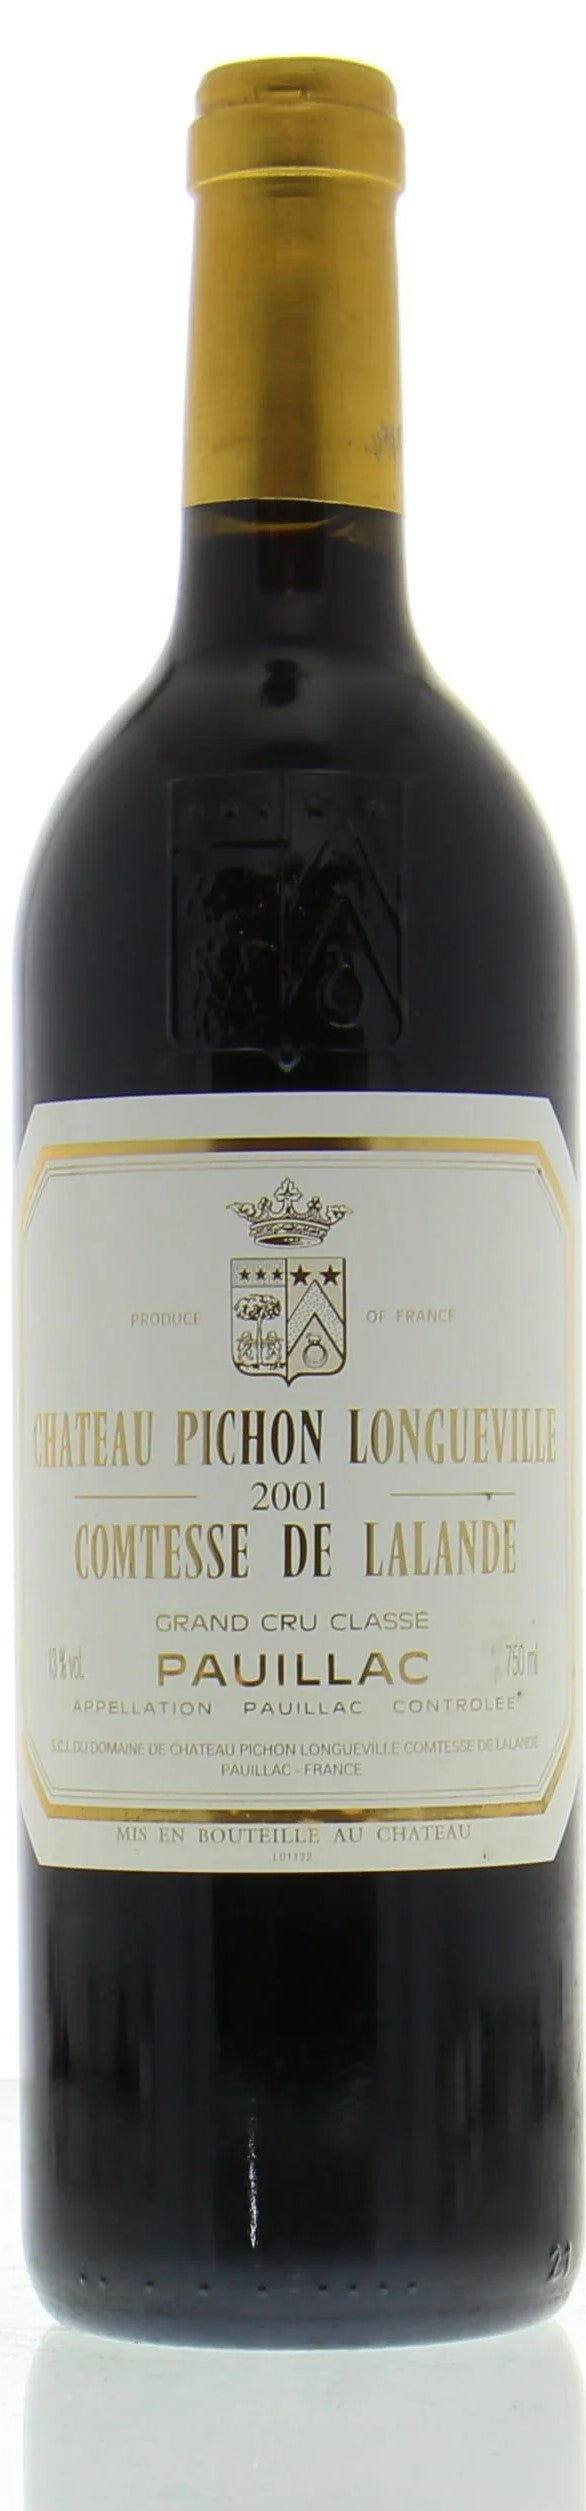 Chateau Pichon Longueville Comtesse de Lalande 2001